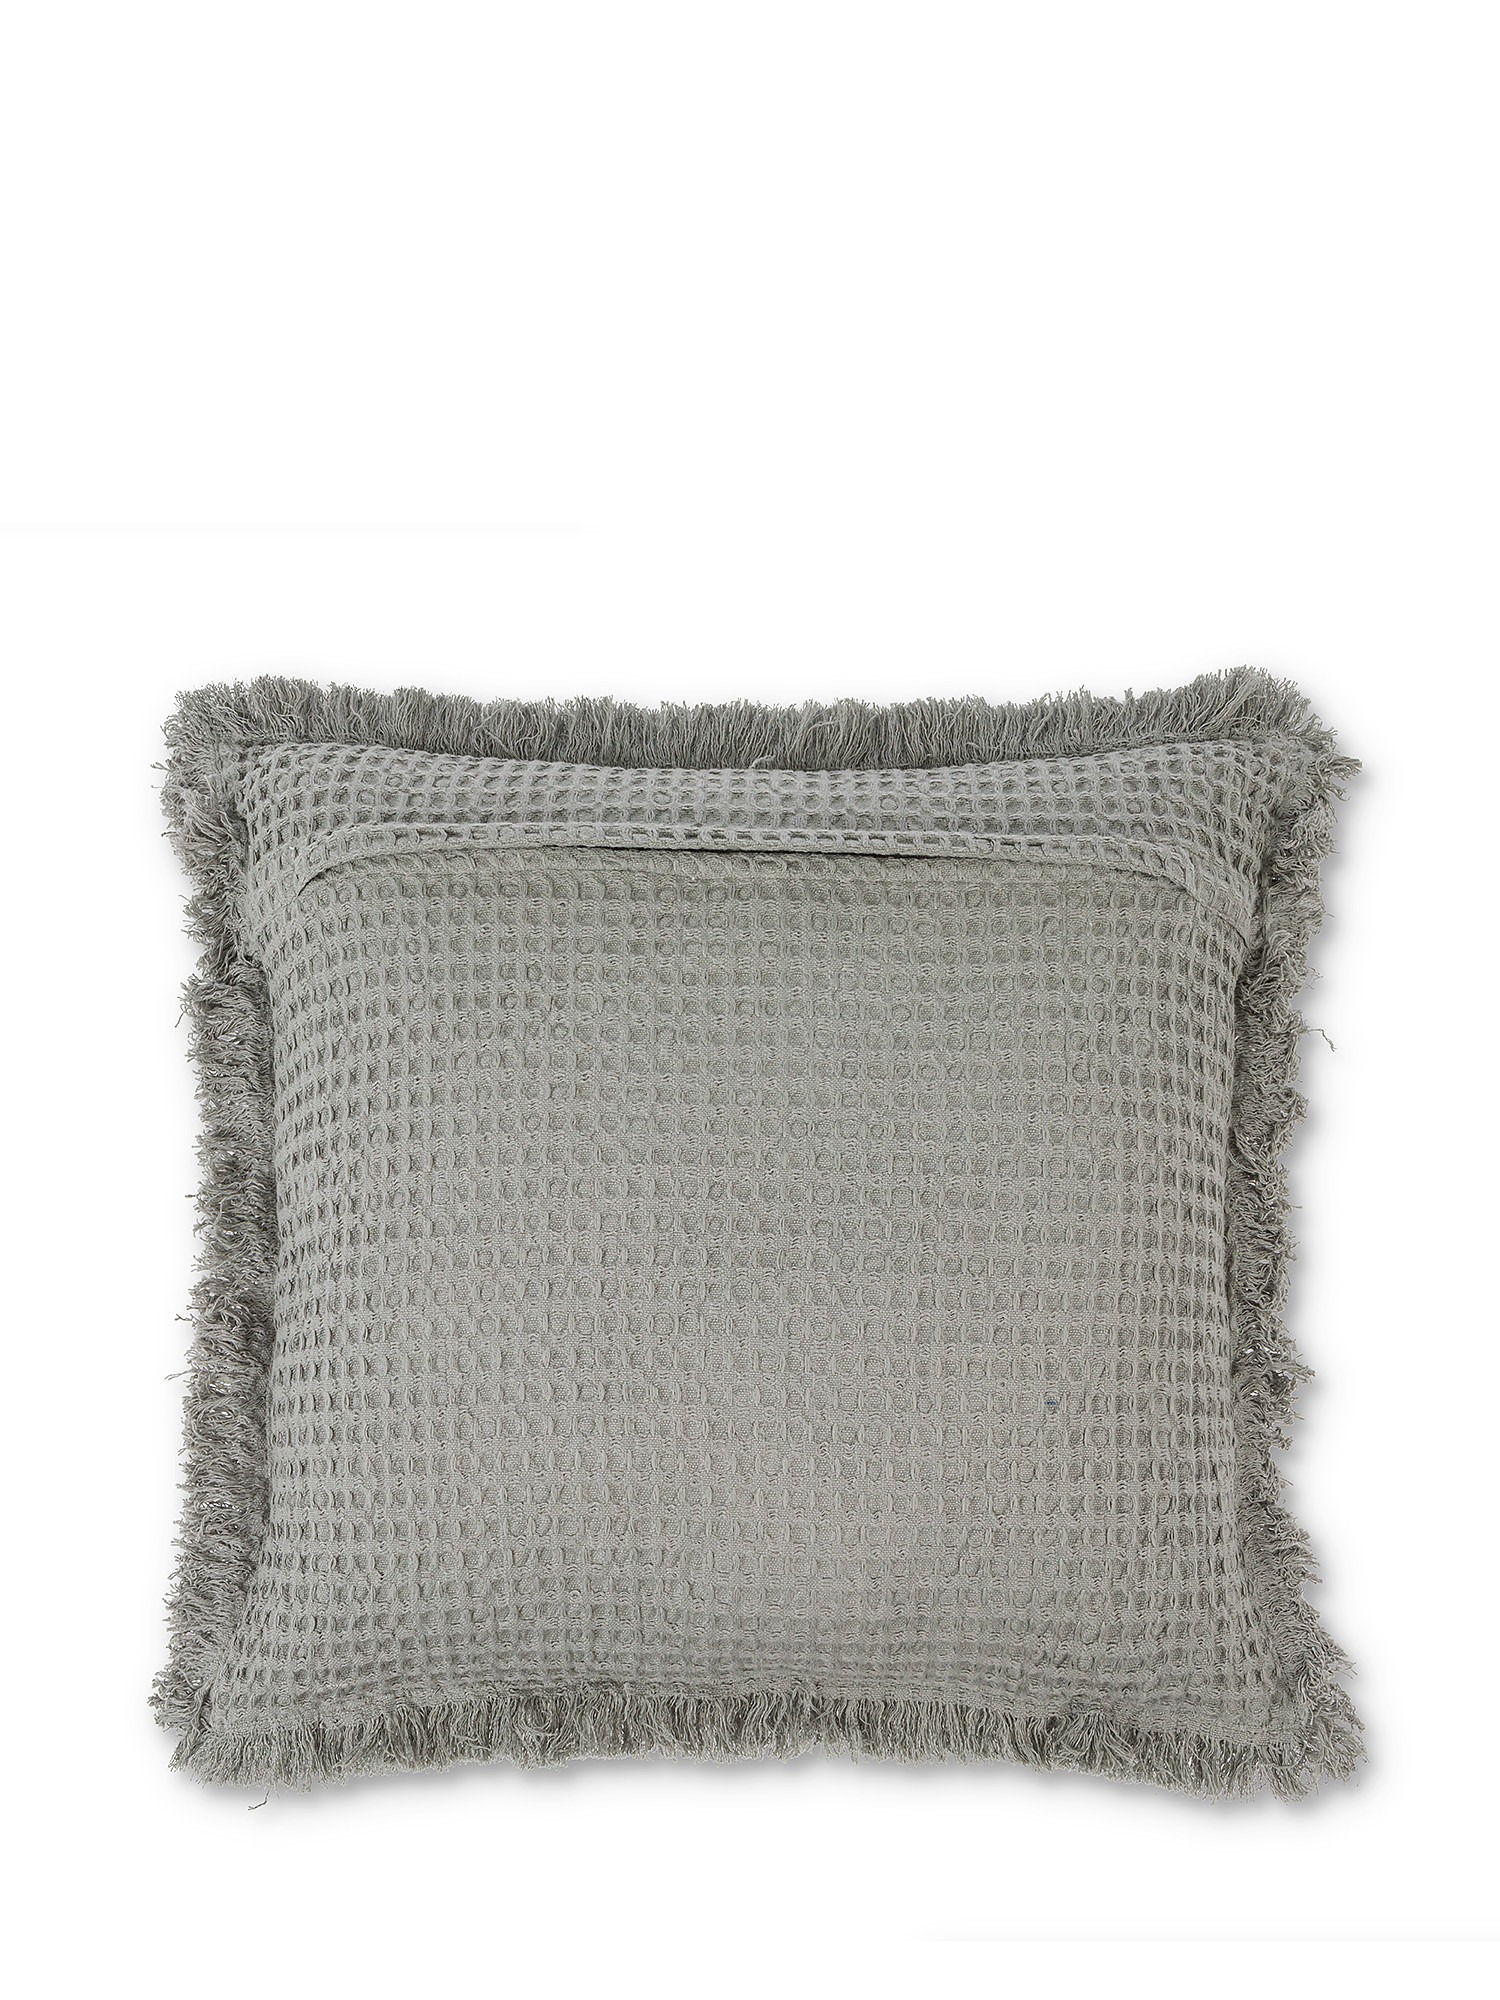 Honeycomb cotton cushion 45x45cm, Grey, large image number 1